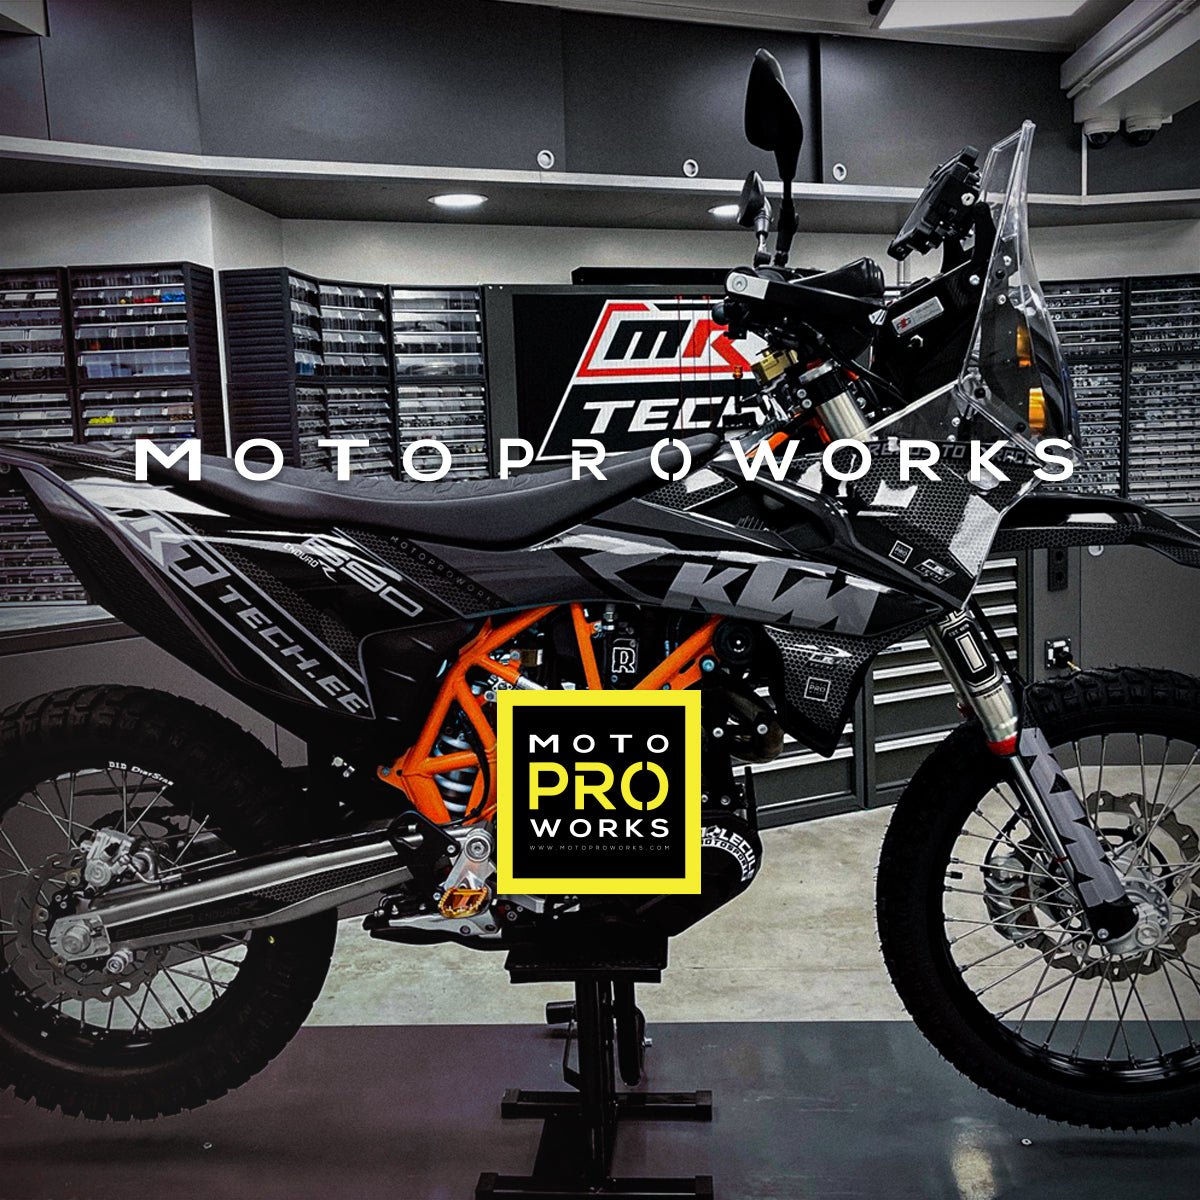 Car & Motorbike Stickers - De Motocross Em Desenho - Free